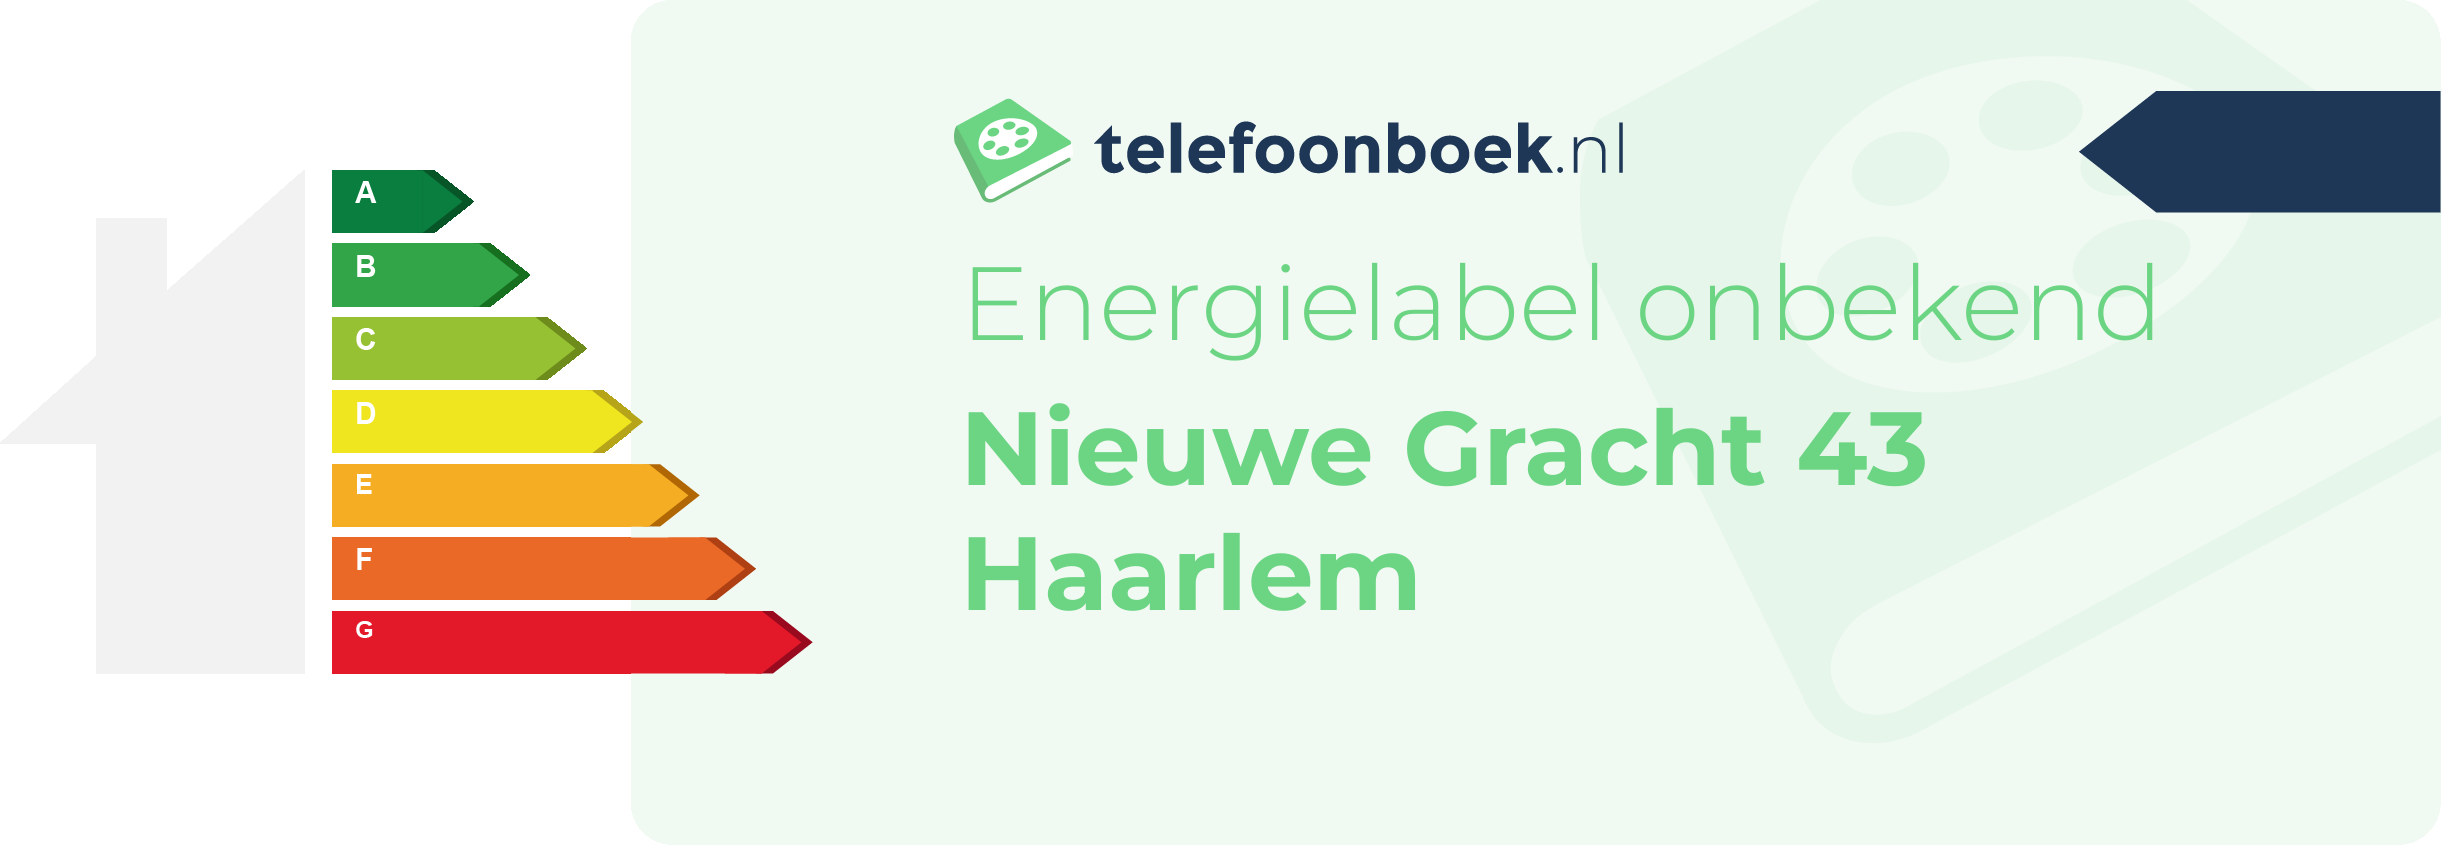 Energielabel Nieuwe Gracht 43 Haarlem